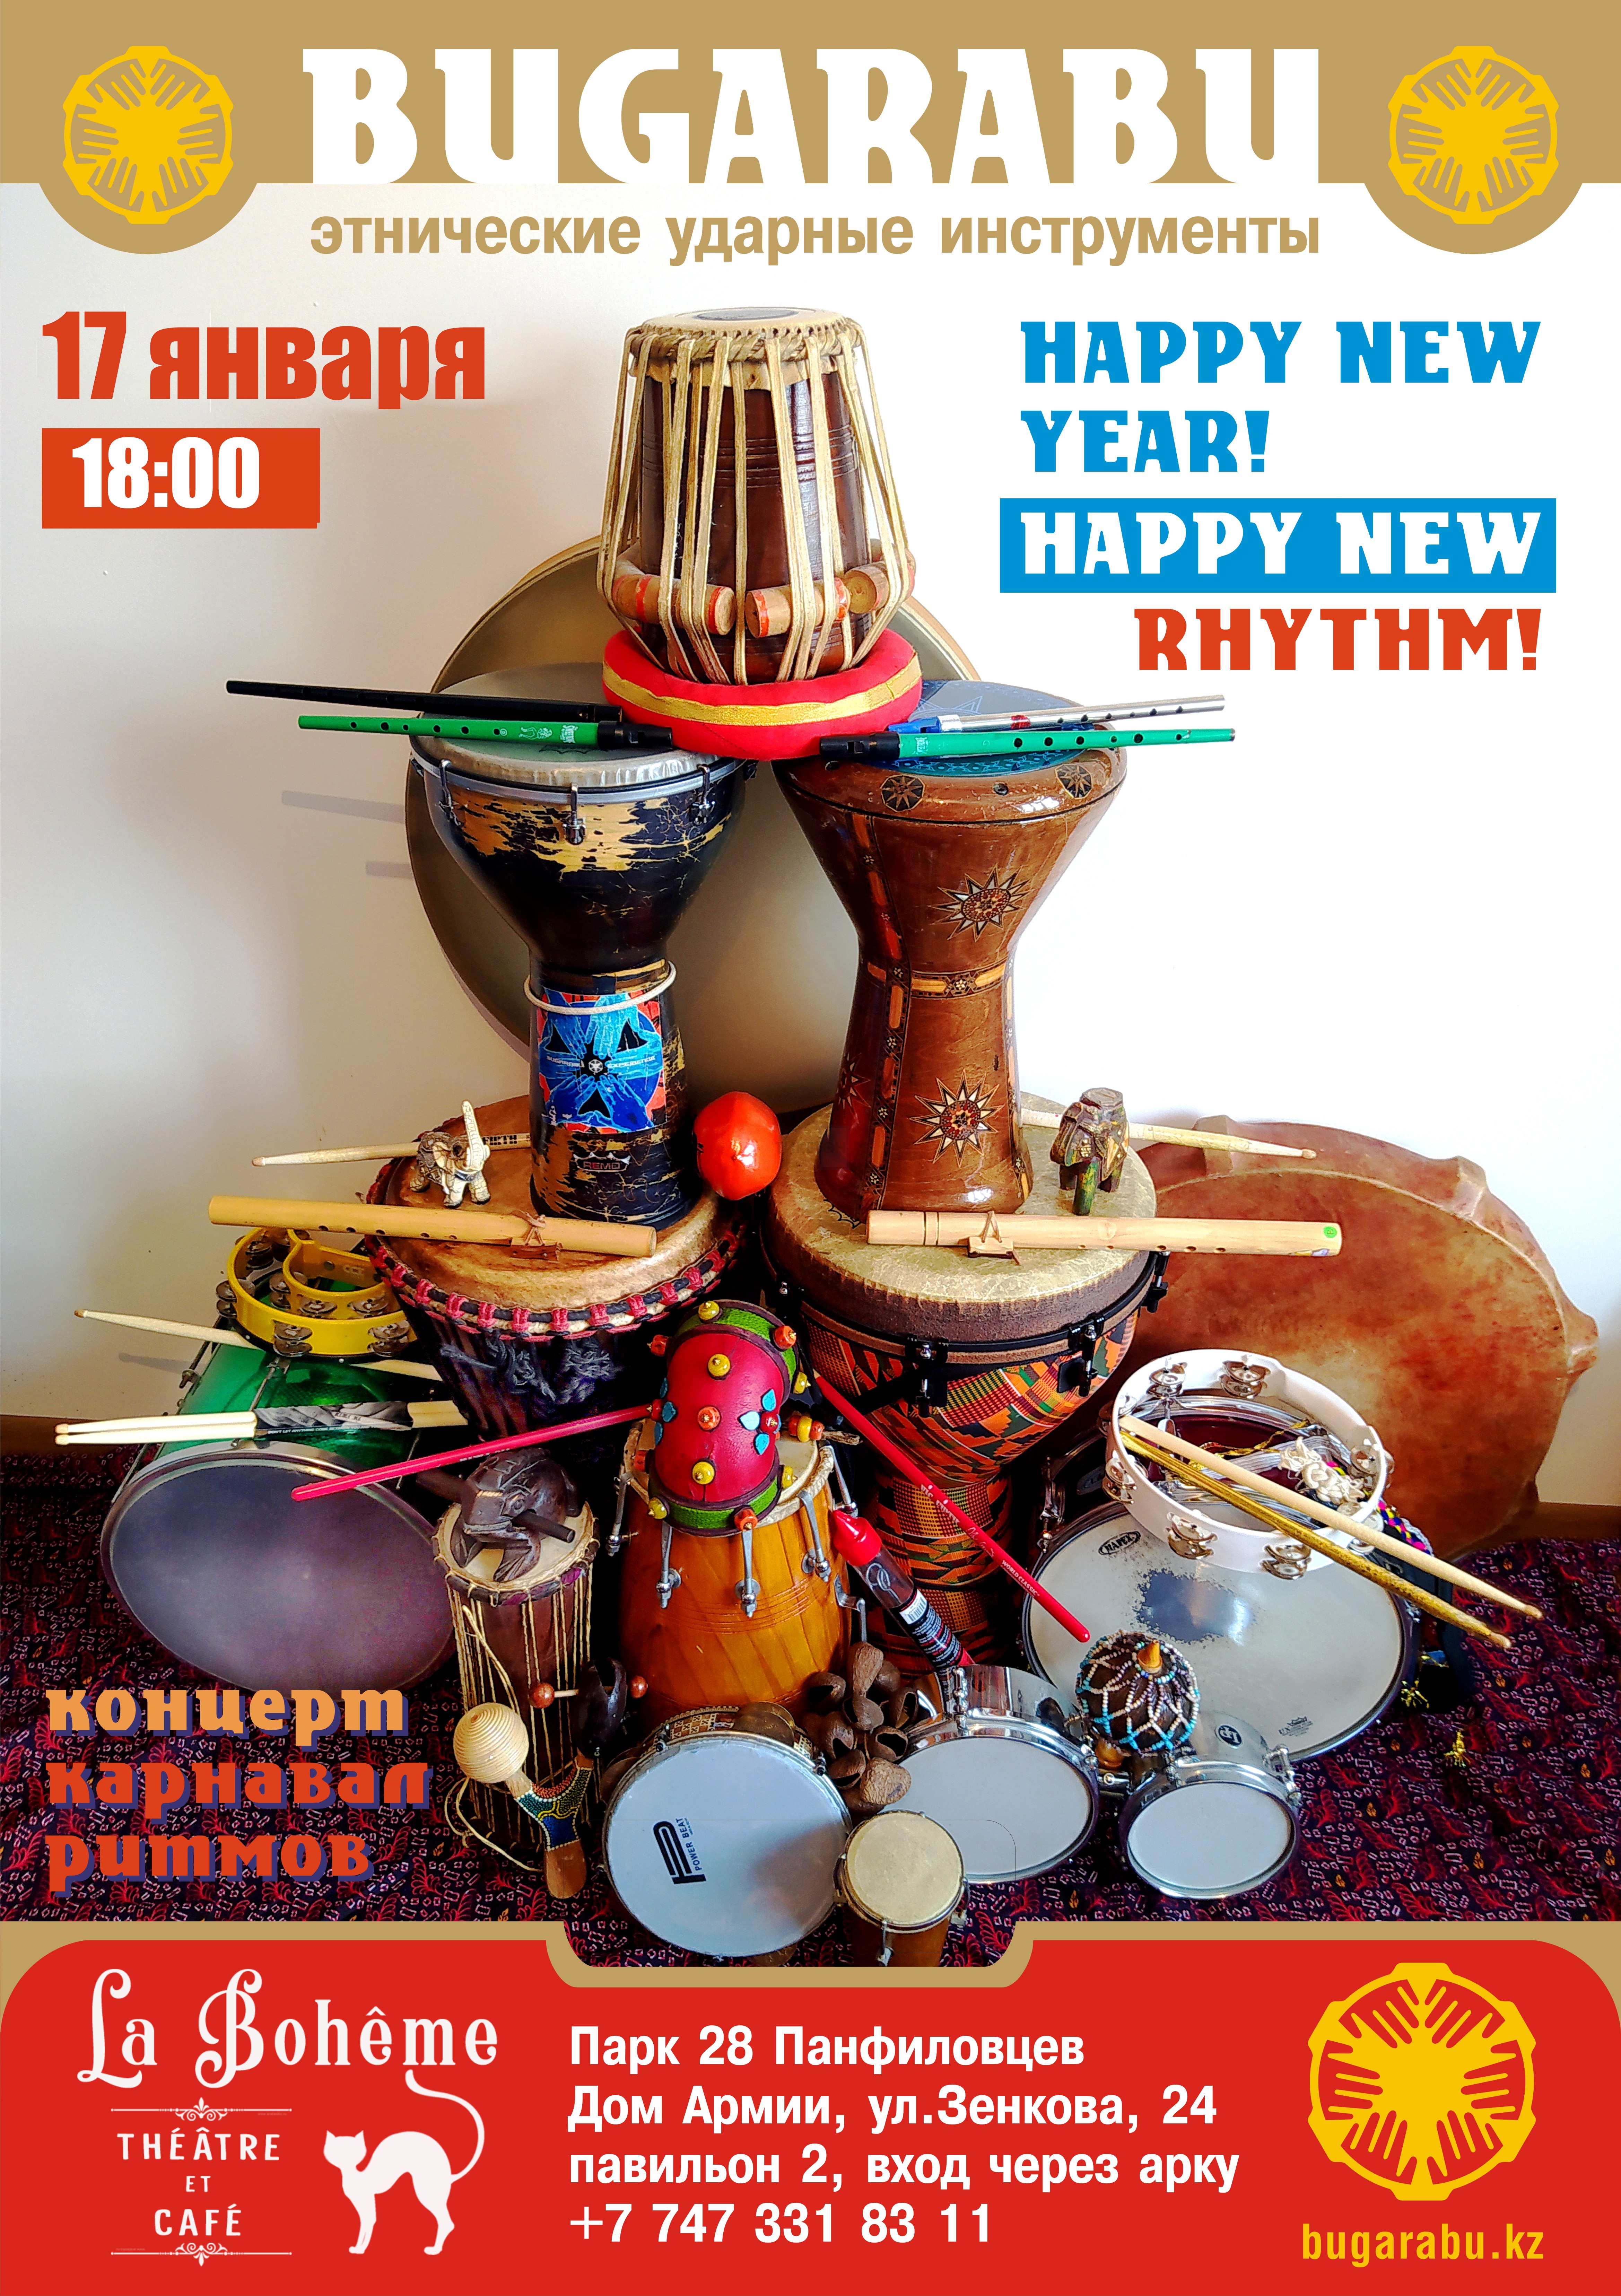 «Happy new year - happy new rhythm»